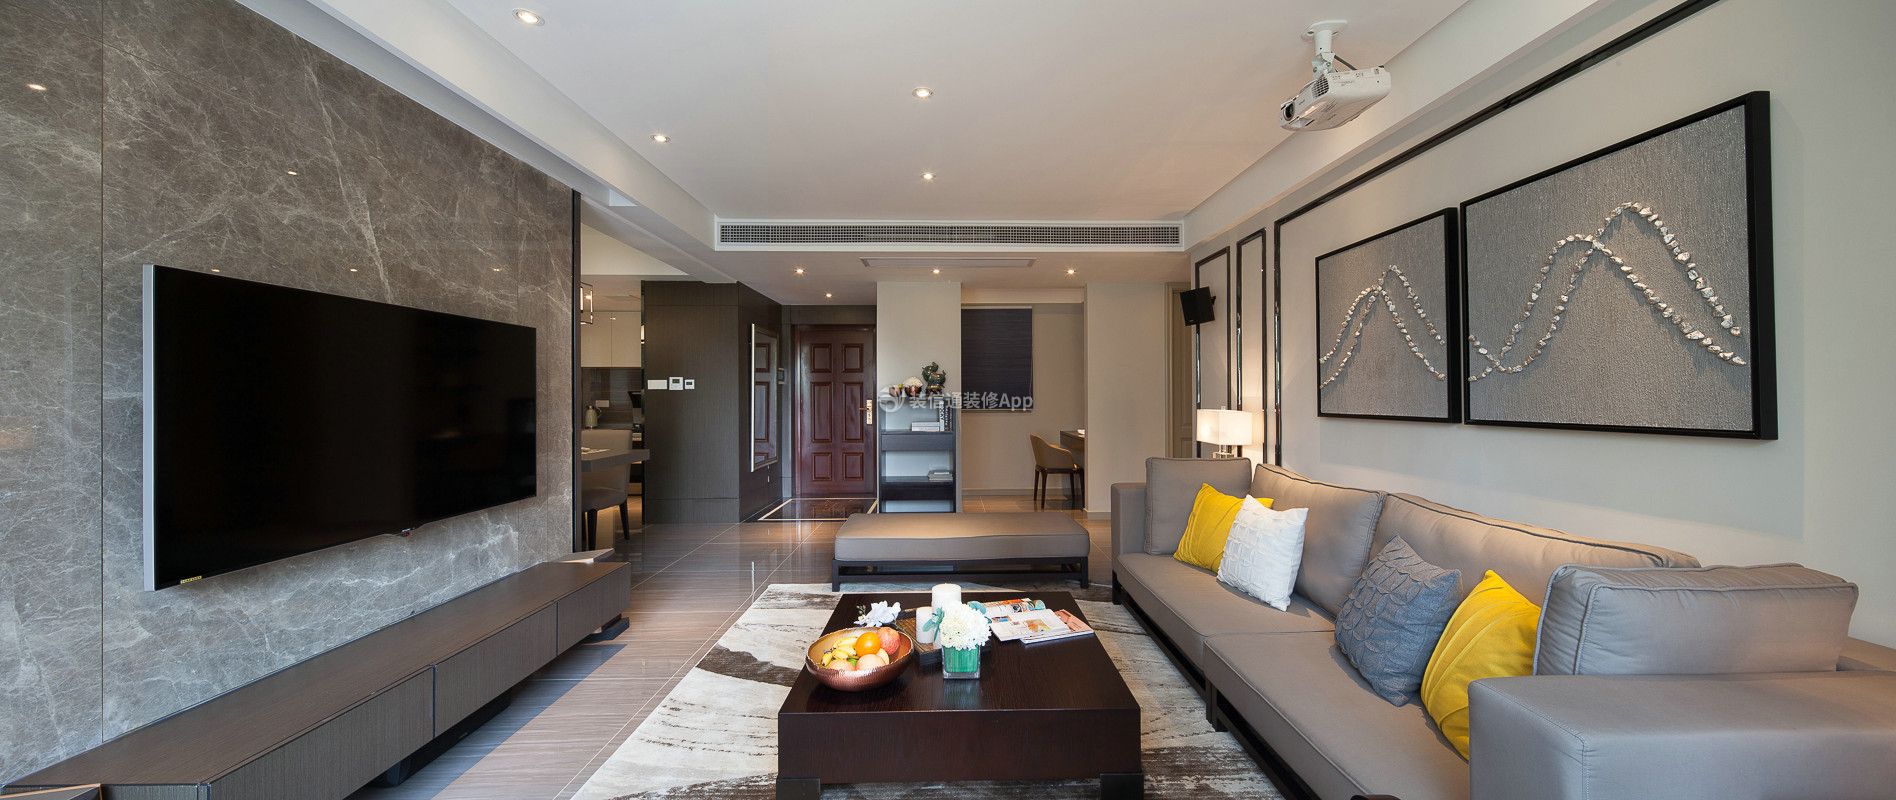 上海城110平方现代风格客厅灰色布艺沙发装修图片